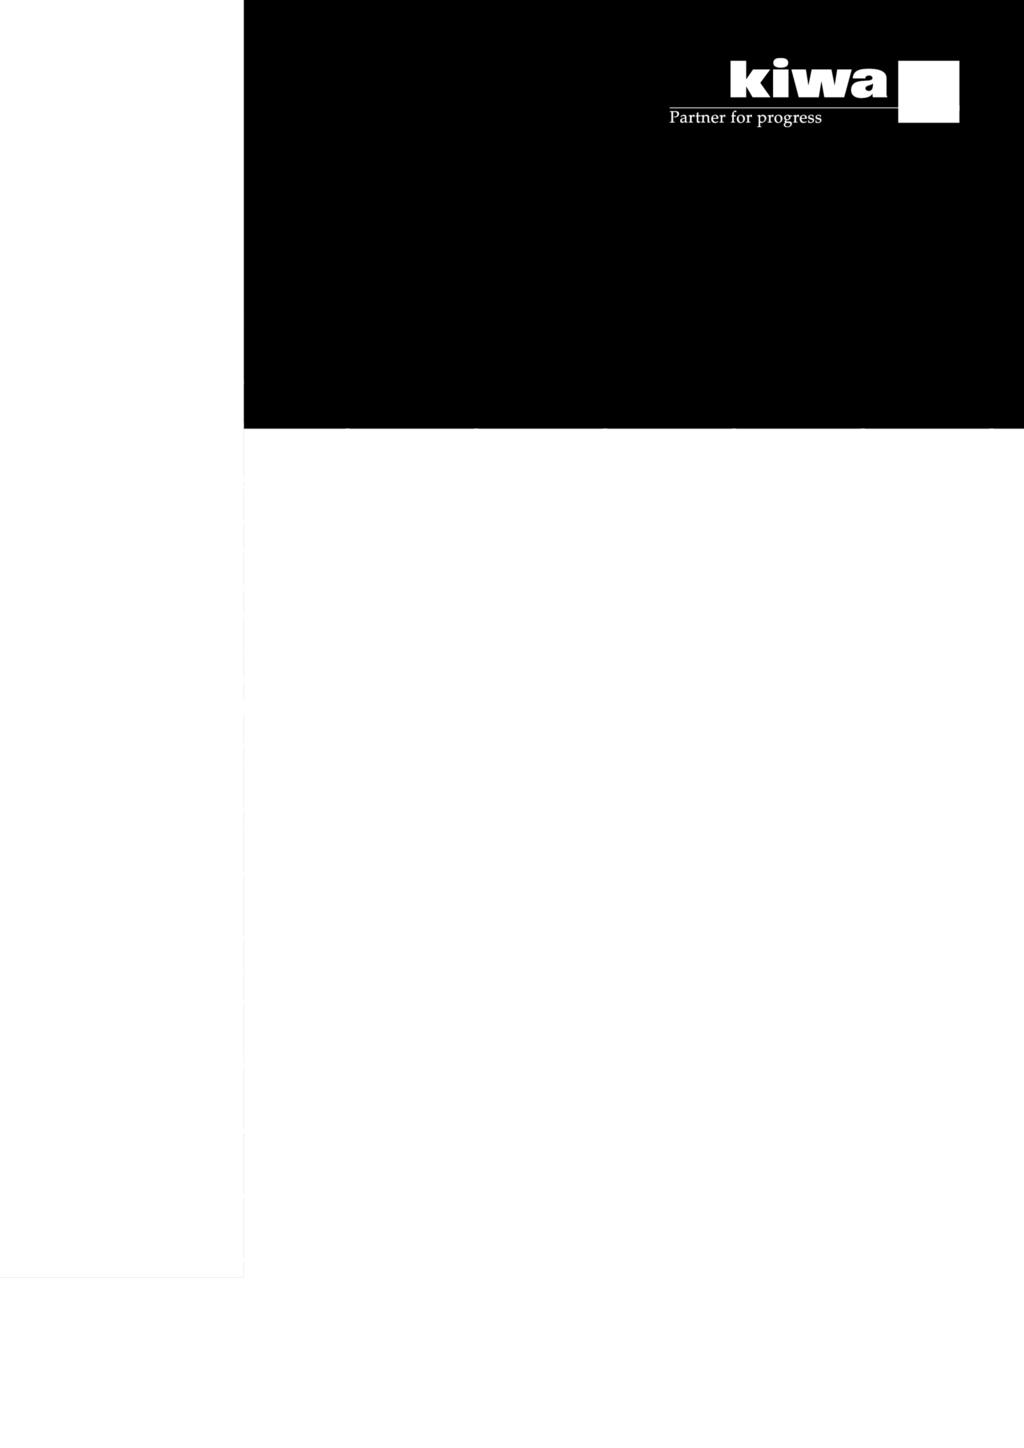 1997-11-20 Geldig tot Onbepaald Pagina 1 van 25 Schöck Isokorf typen: O, F en A Wapeningssystemen voor onderbreking van thermische bruggen in beton Schöck Bauteile GmbH VERKLARING VAN KIWA Dit